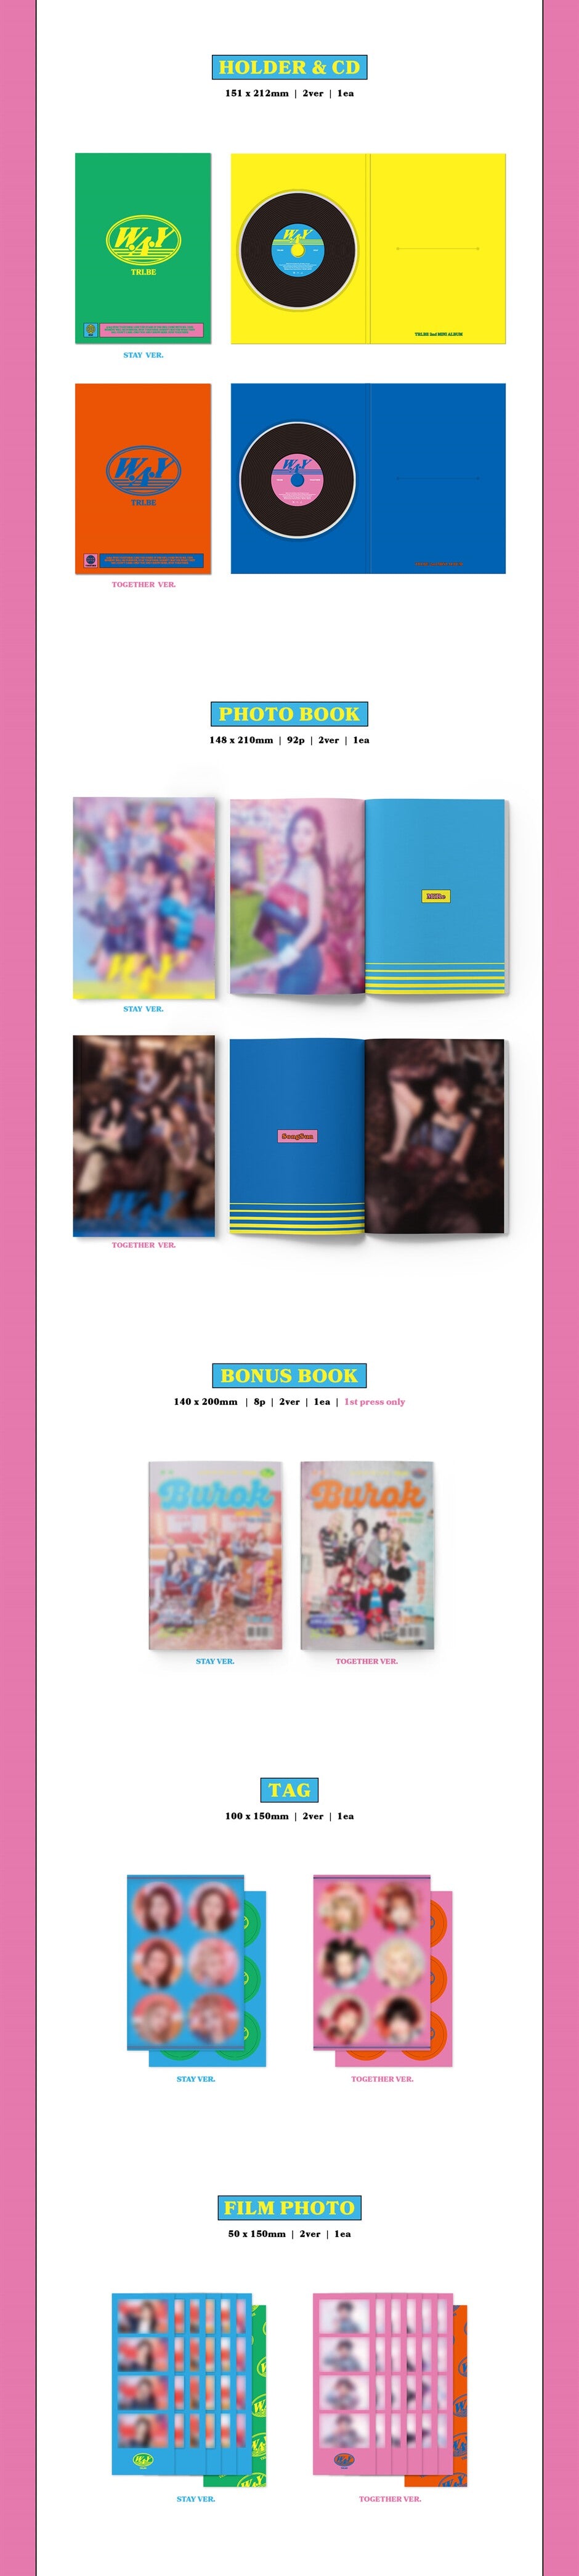 K-Pop CD TRI.BE - 2nd Mini album 'W.A.Y'